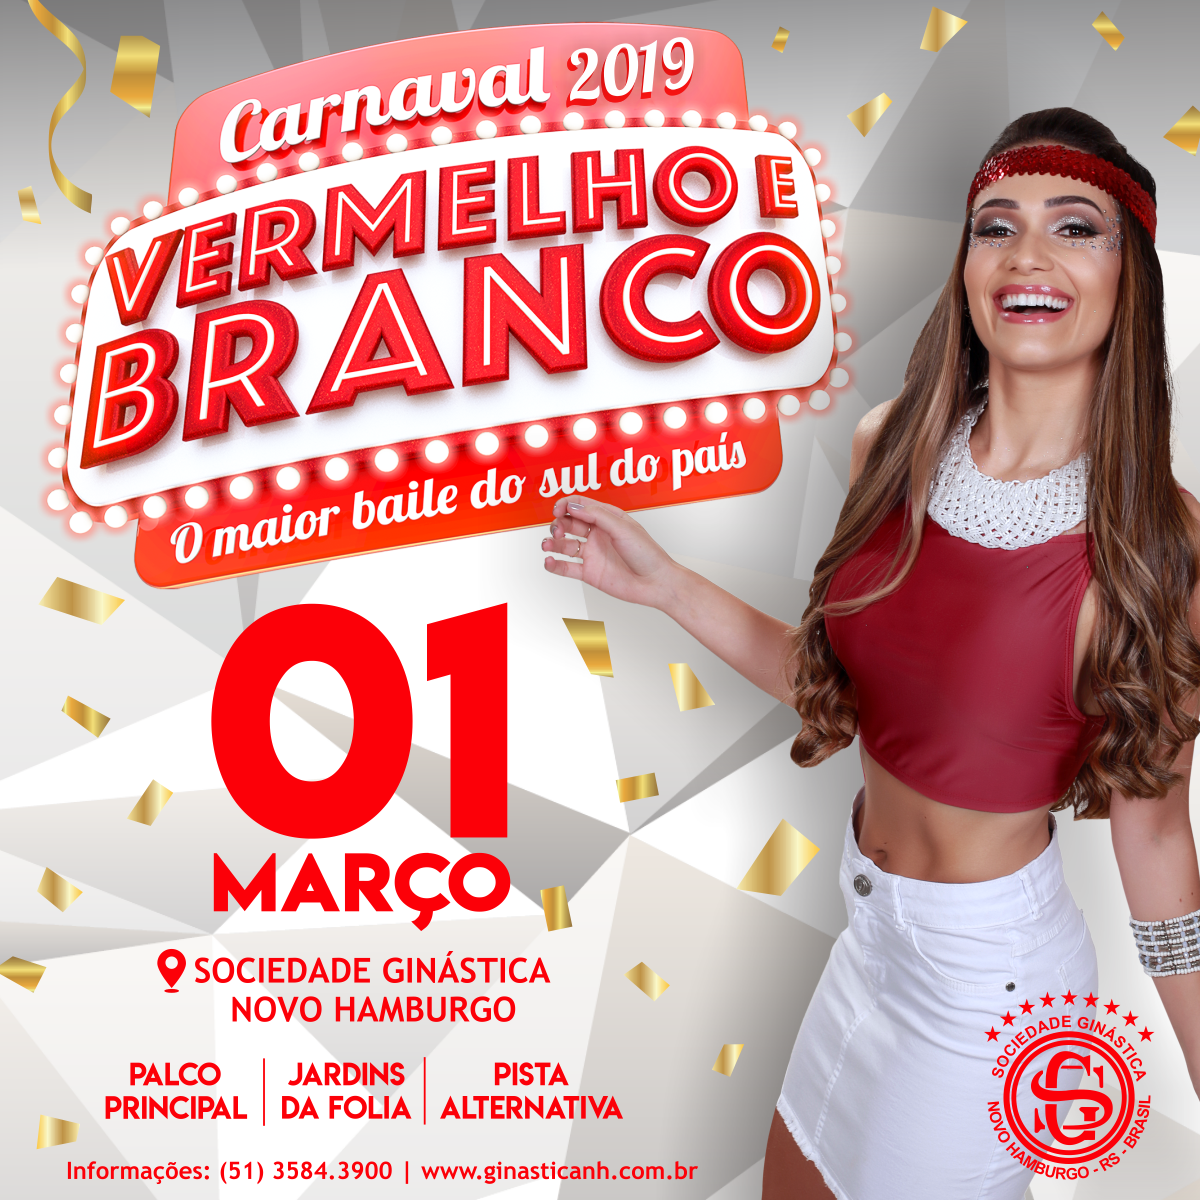 Vermelho & Branco 2019: o maior baile de carnaval do sul do país